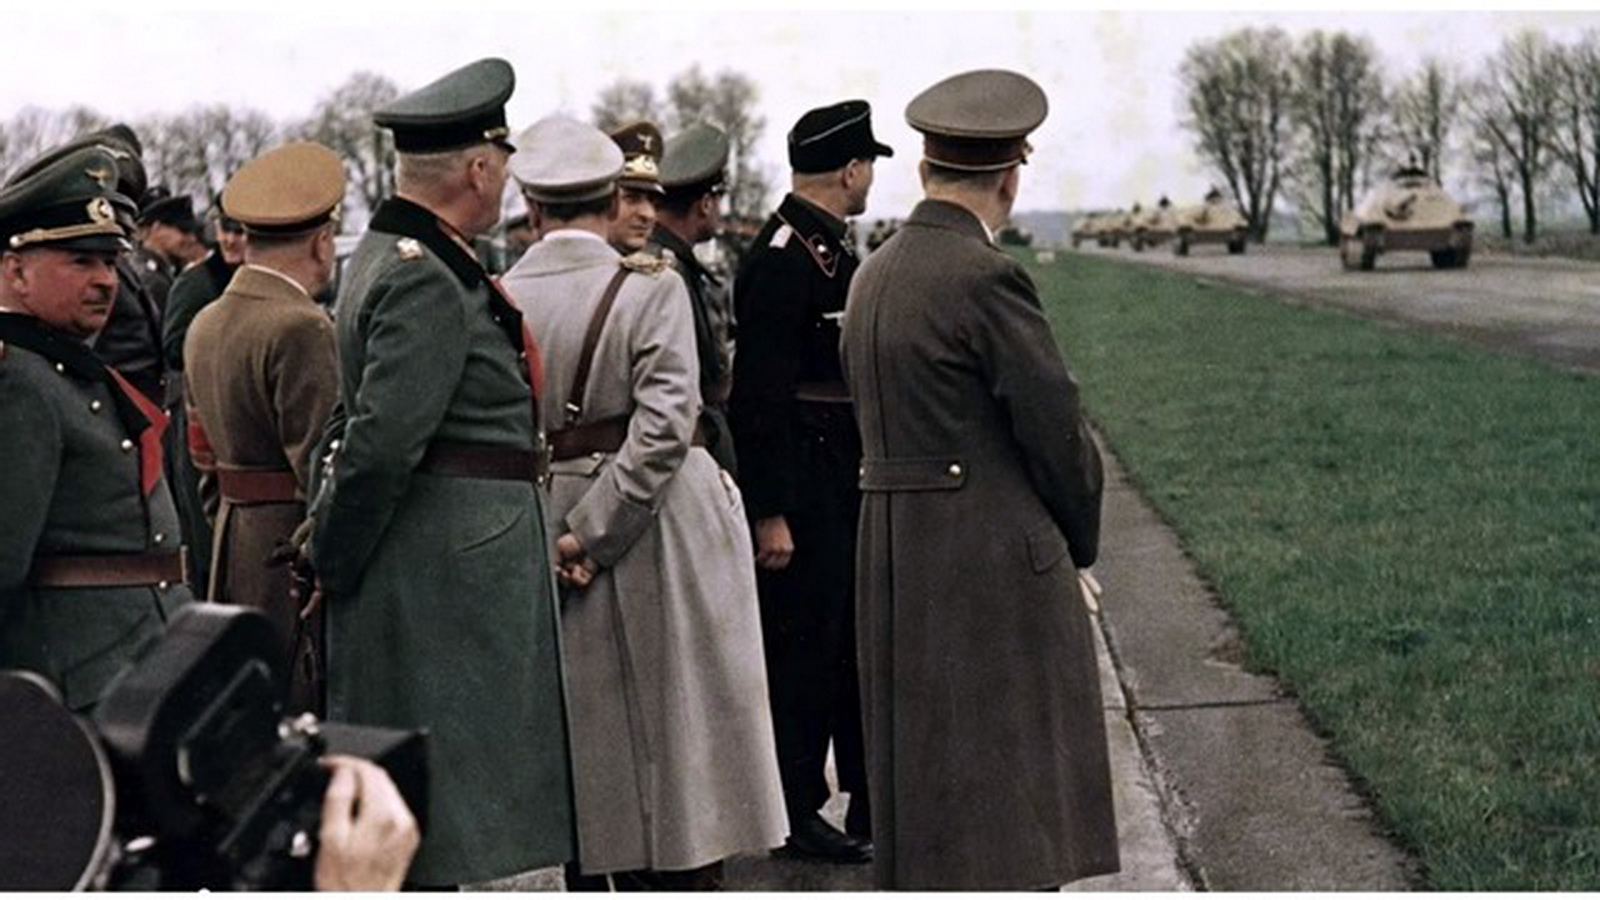 Гомосексуалист Рейха. Из концлагеря в вермахт. Color Adolf Hitler autobahn parade hetzer nazi officials.jpg